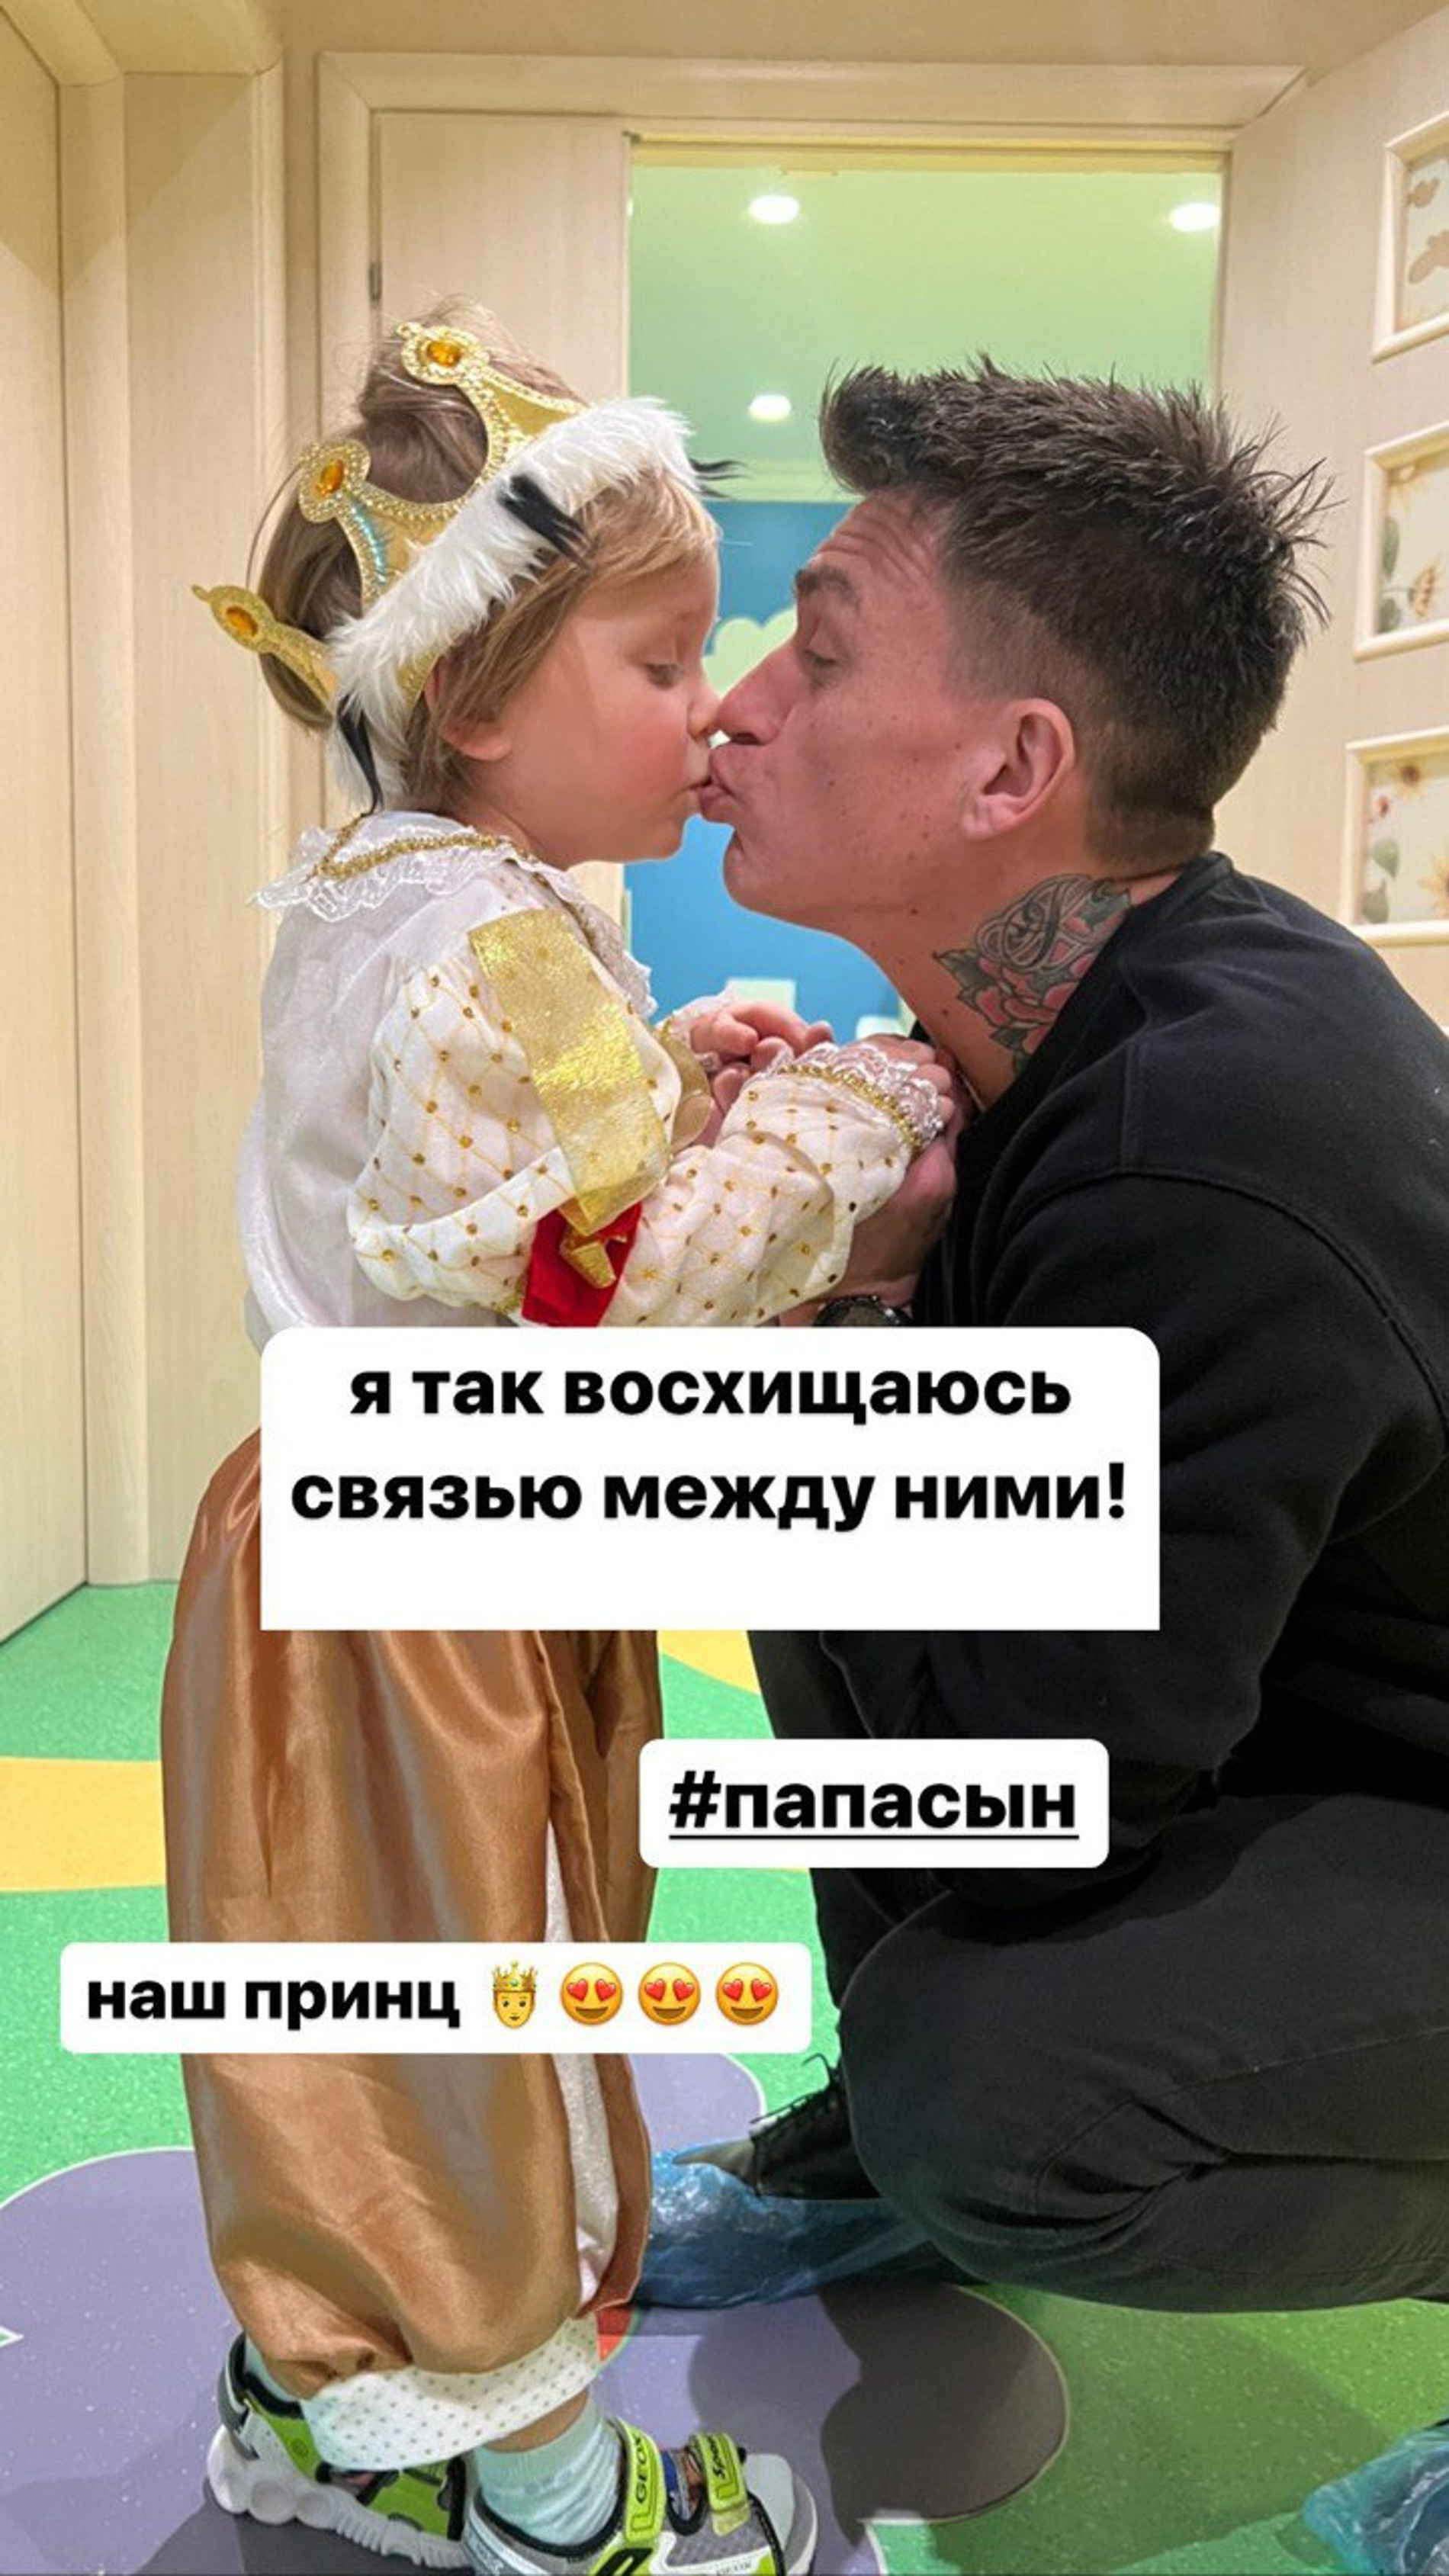 Влад Топалов со старшим сыном Мишей
Фото: Инстаграм (запрещен в РФ)